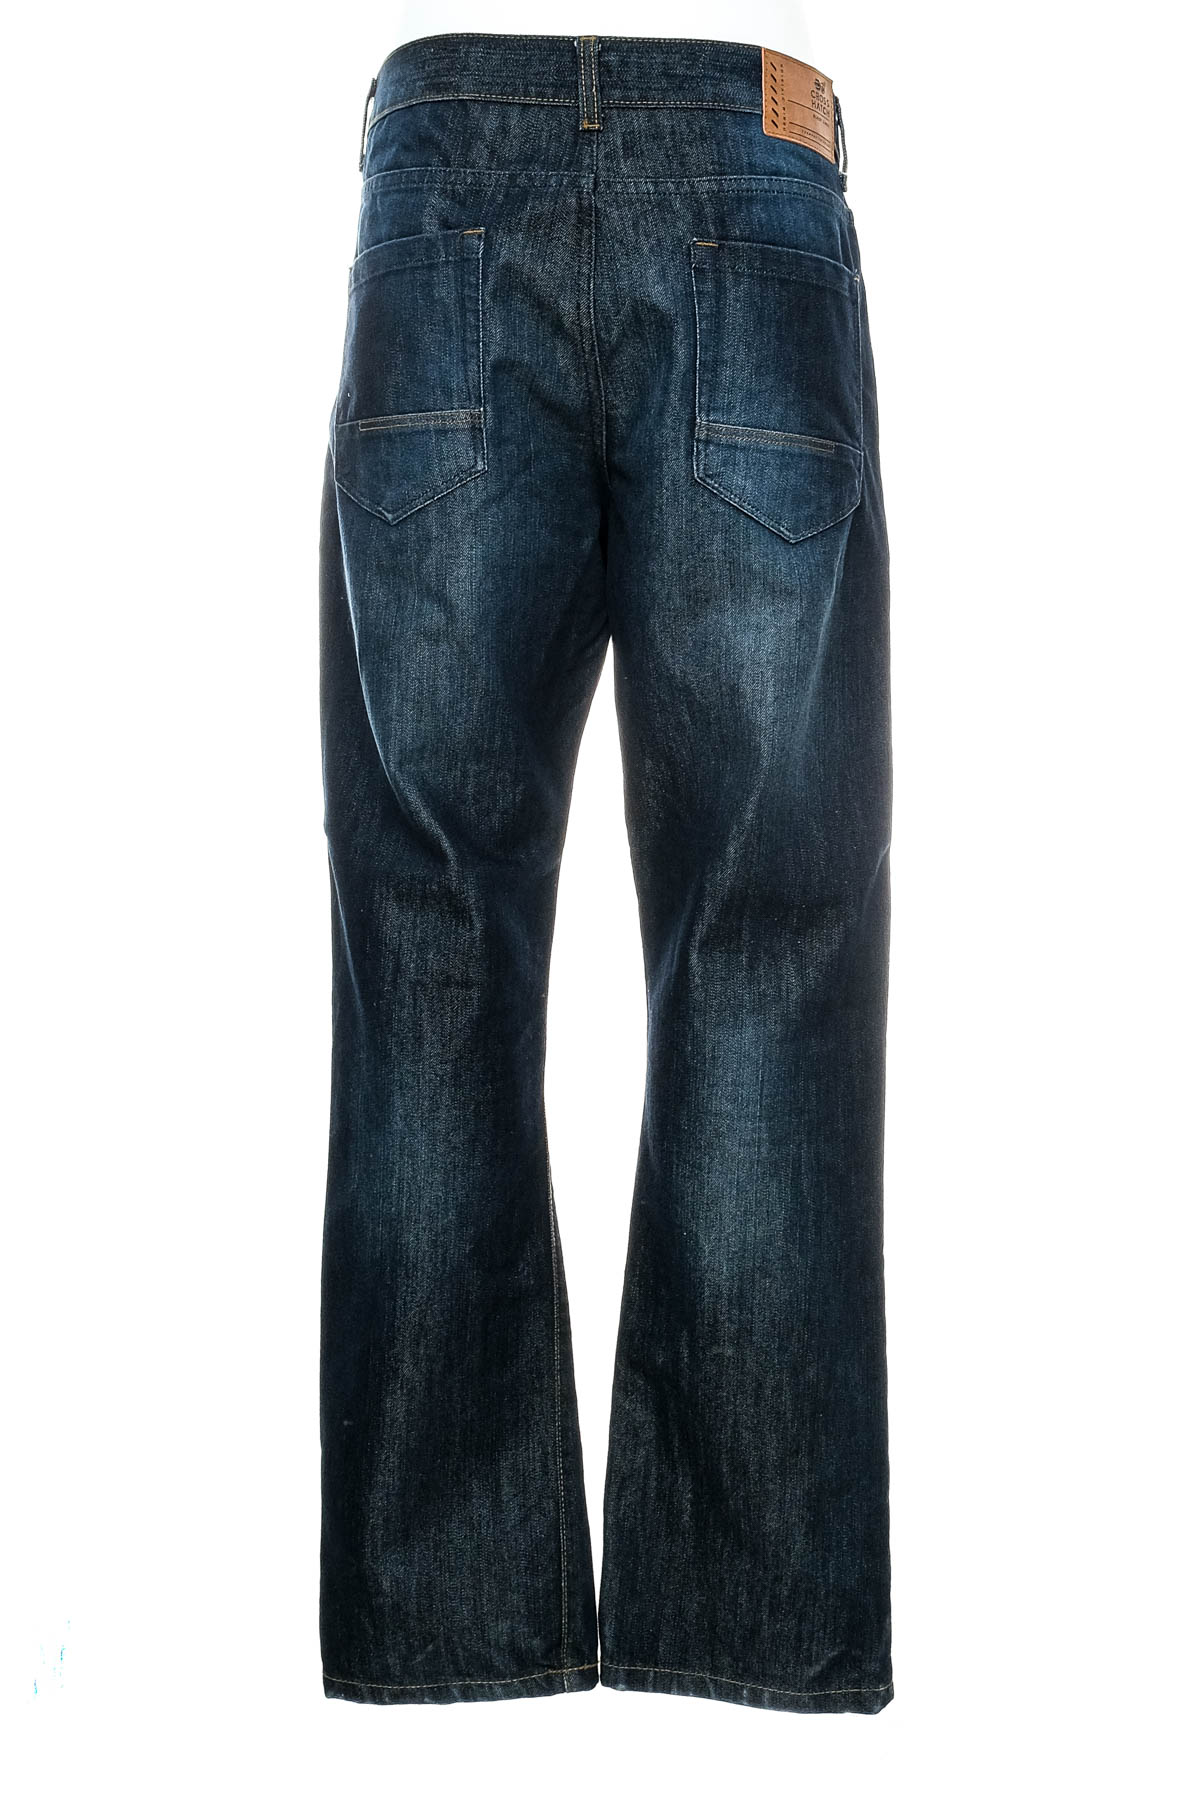 Jeans pentru bărbăți - Cross Hatch - 1